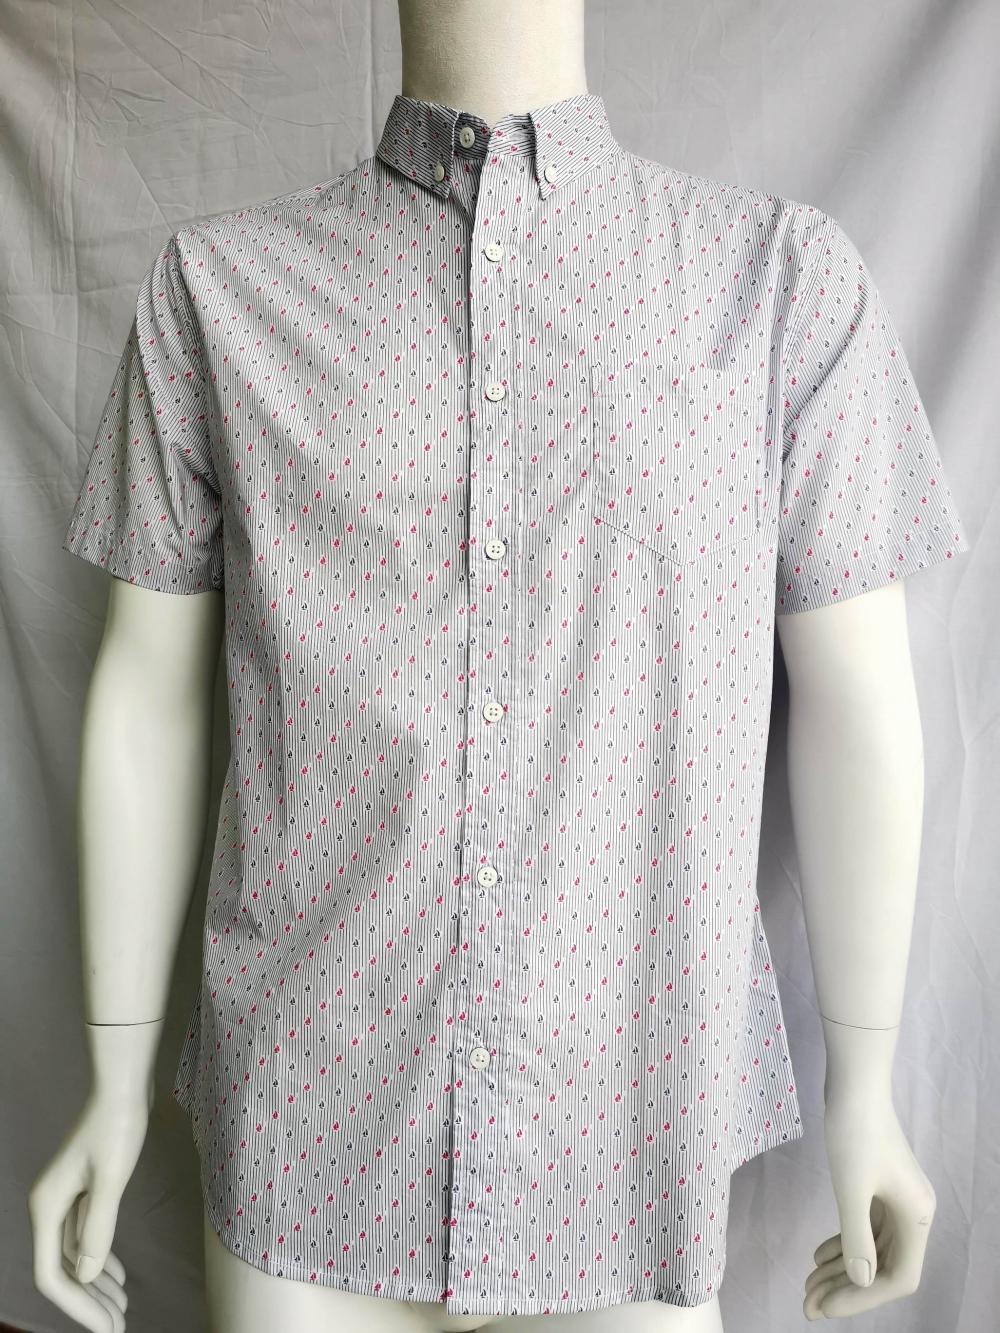 Men Causal 100% Cotton Print Short Sleeve Shirt